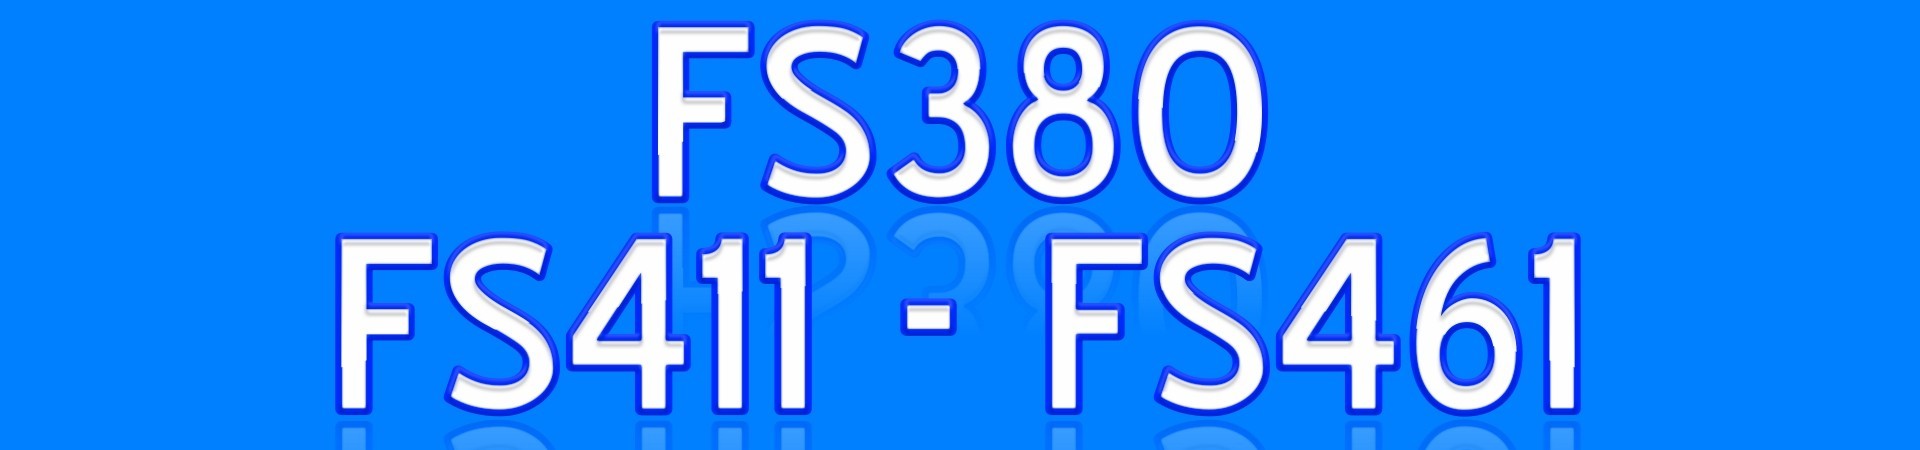 FS380 FS411 FS461